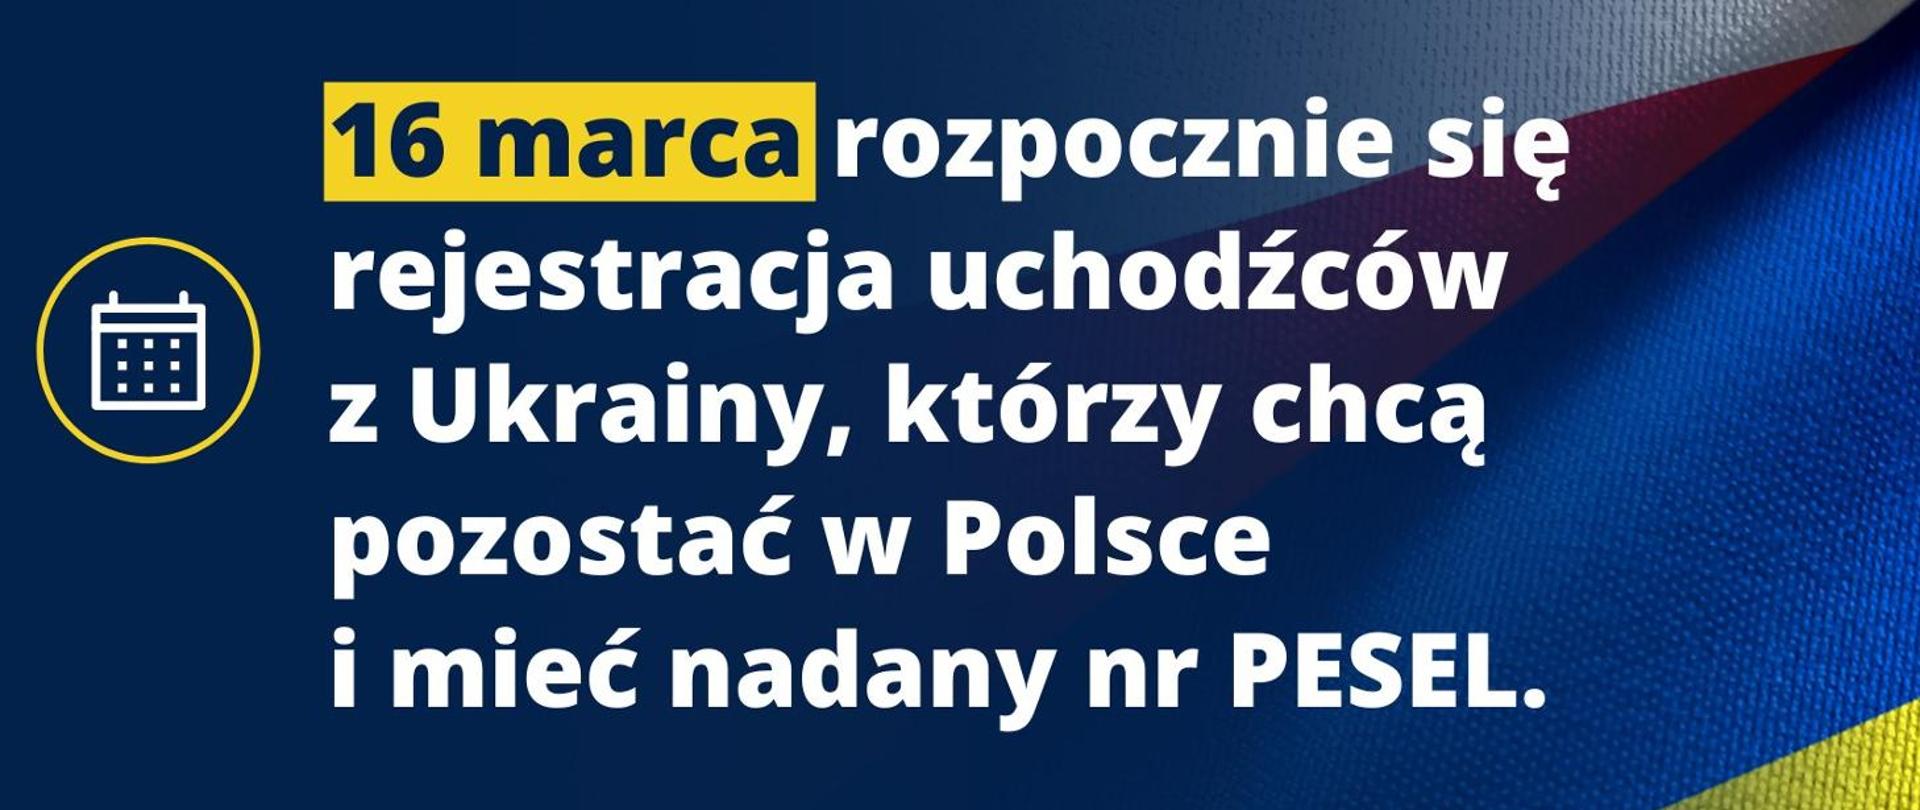 W tle flaga Polski i Ukrainy, na pierwszym planie tekst: "16 marca rozpocznie się rejestracja uchodźców z Ukrainy, którzy chcą pozostać w Polsce i mieć nadany nr PESEL. 